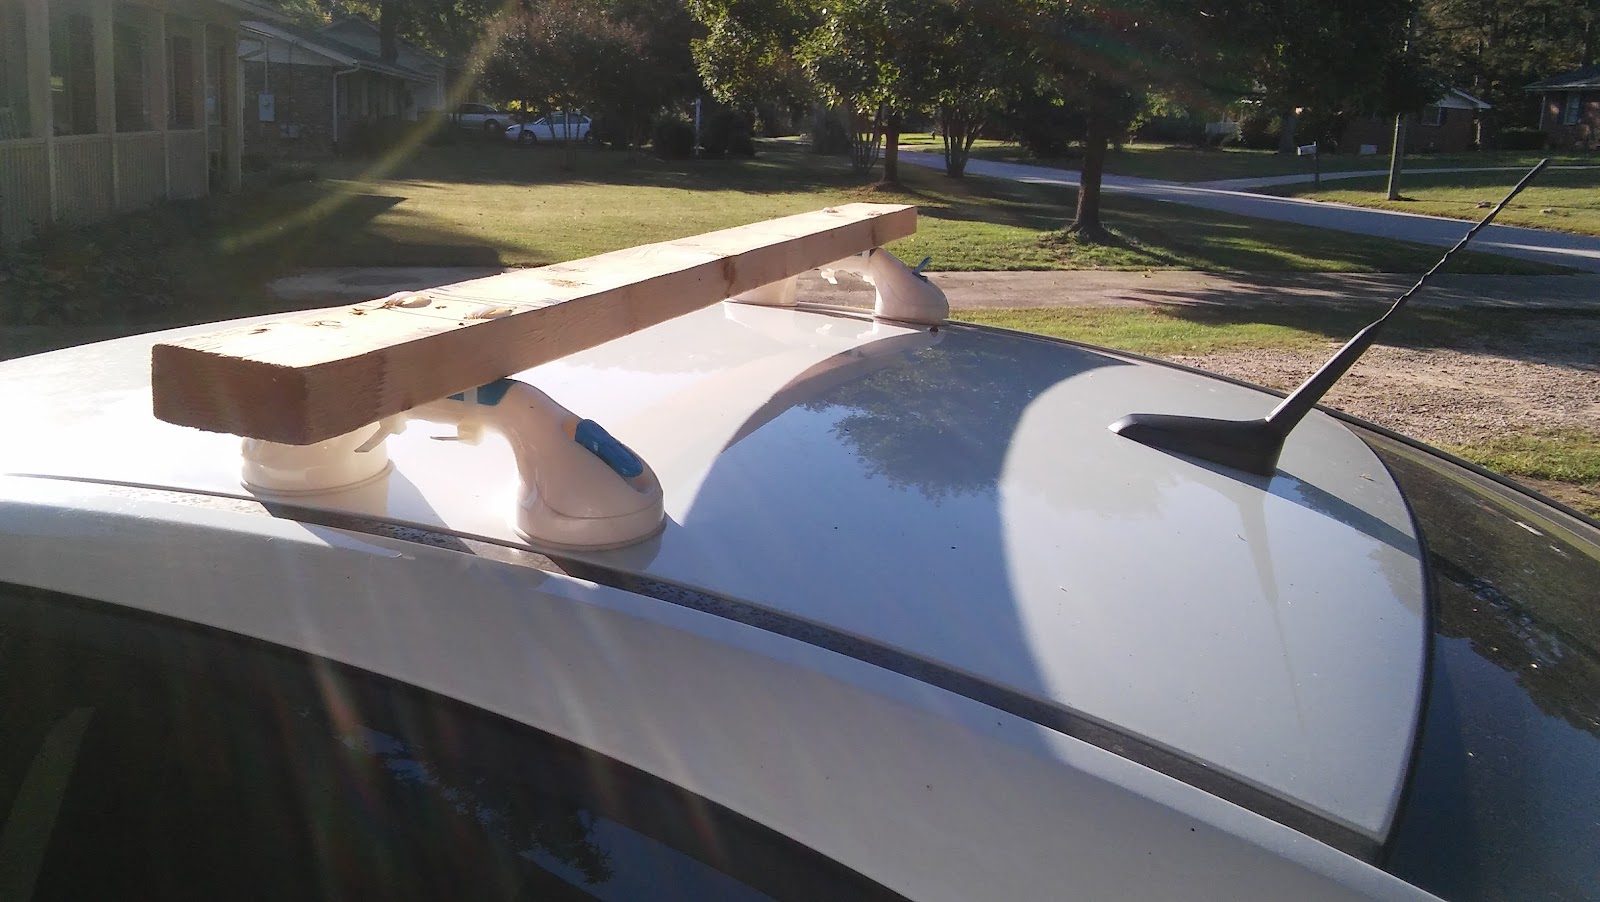 Paddling and Sailing: DIY Cheap Roof Racks